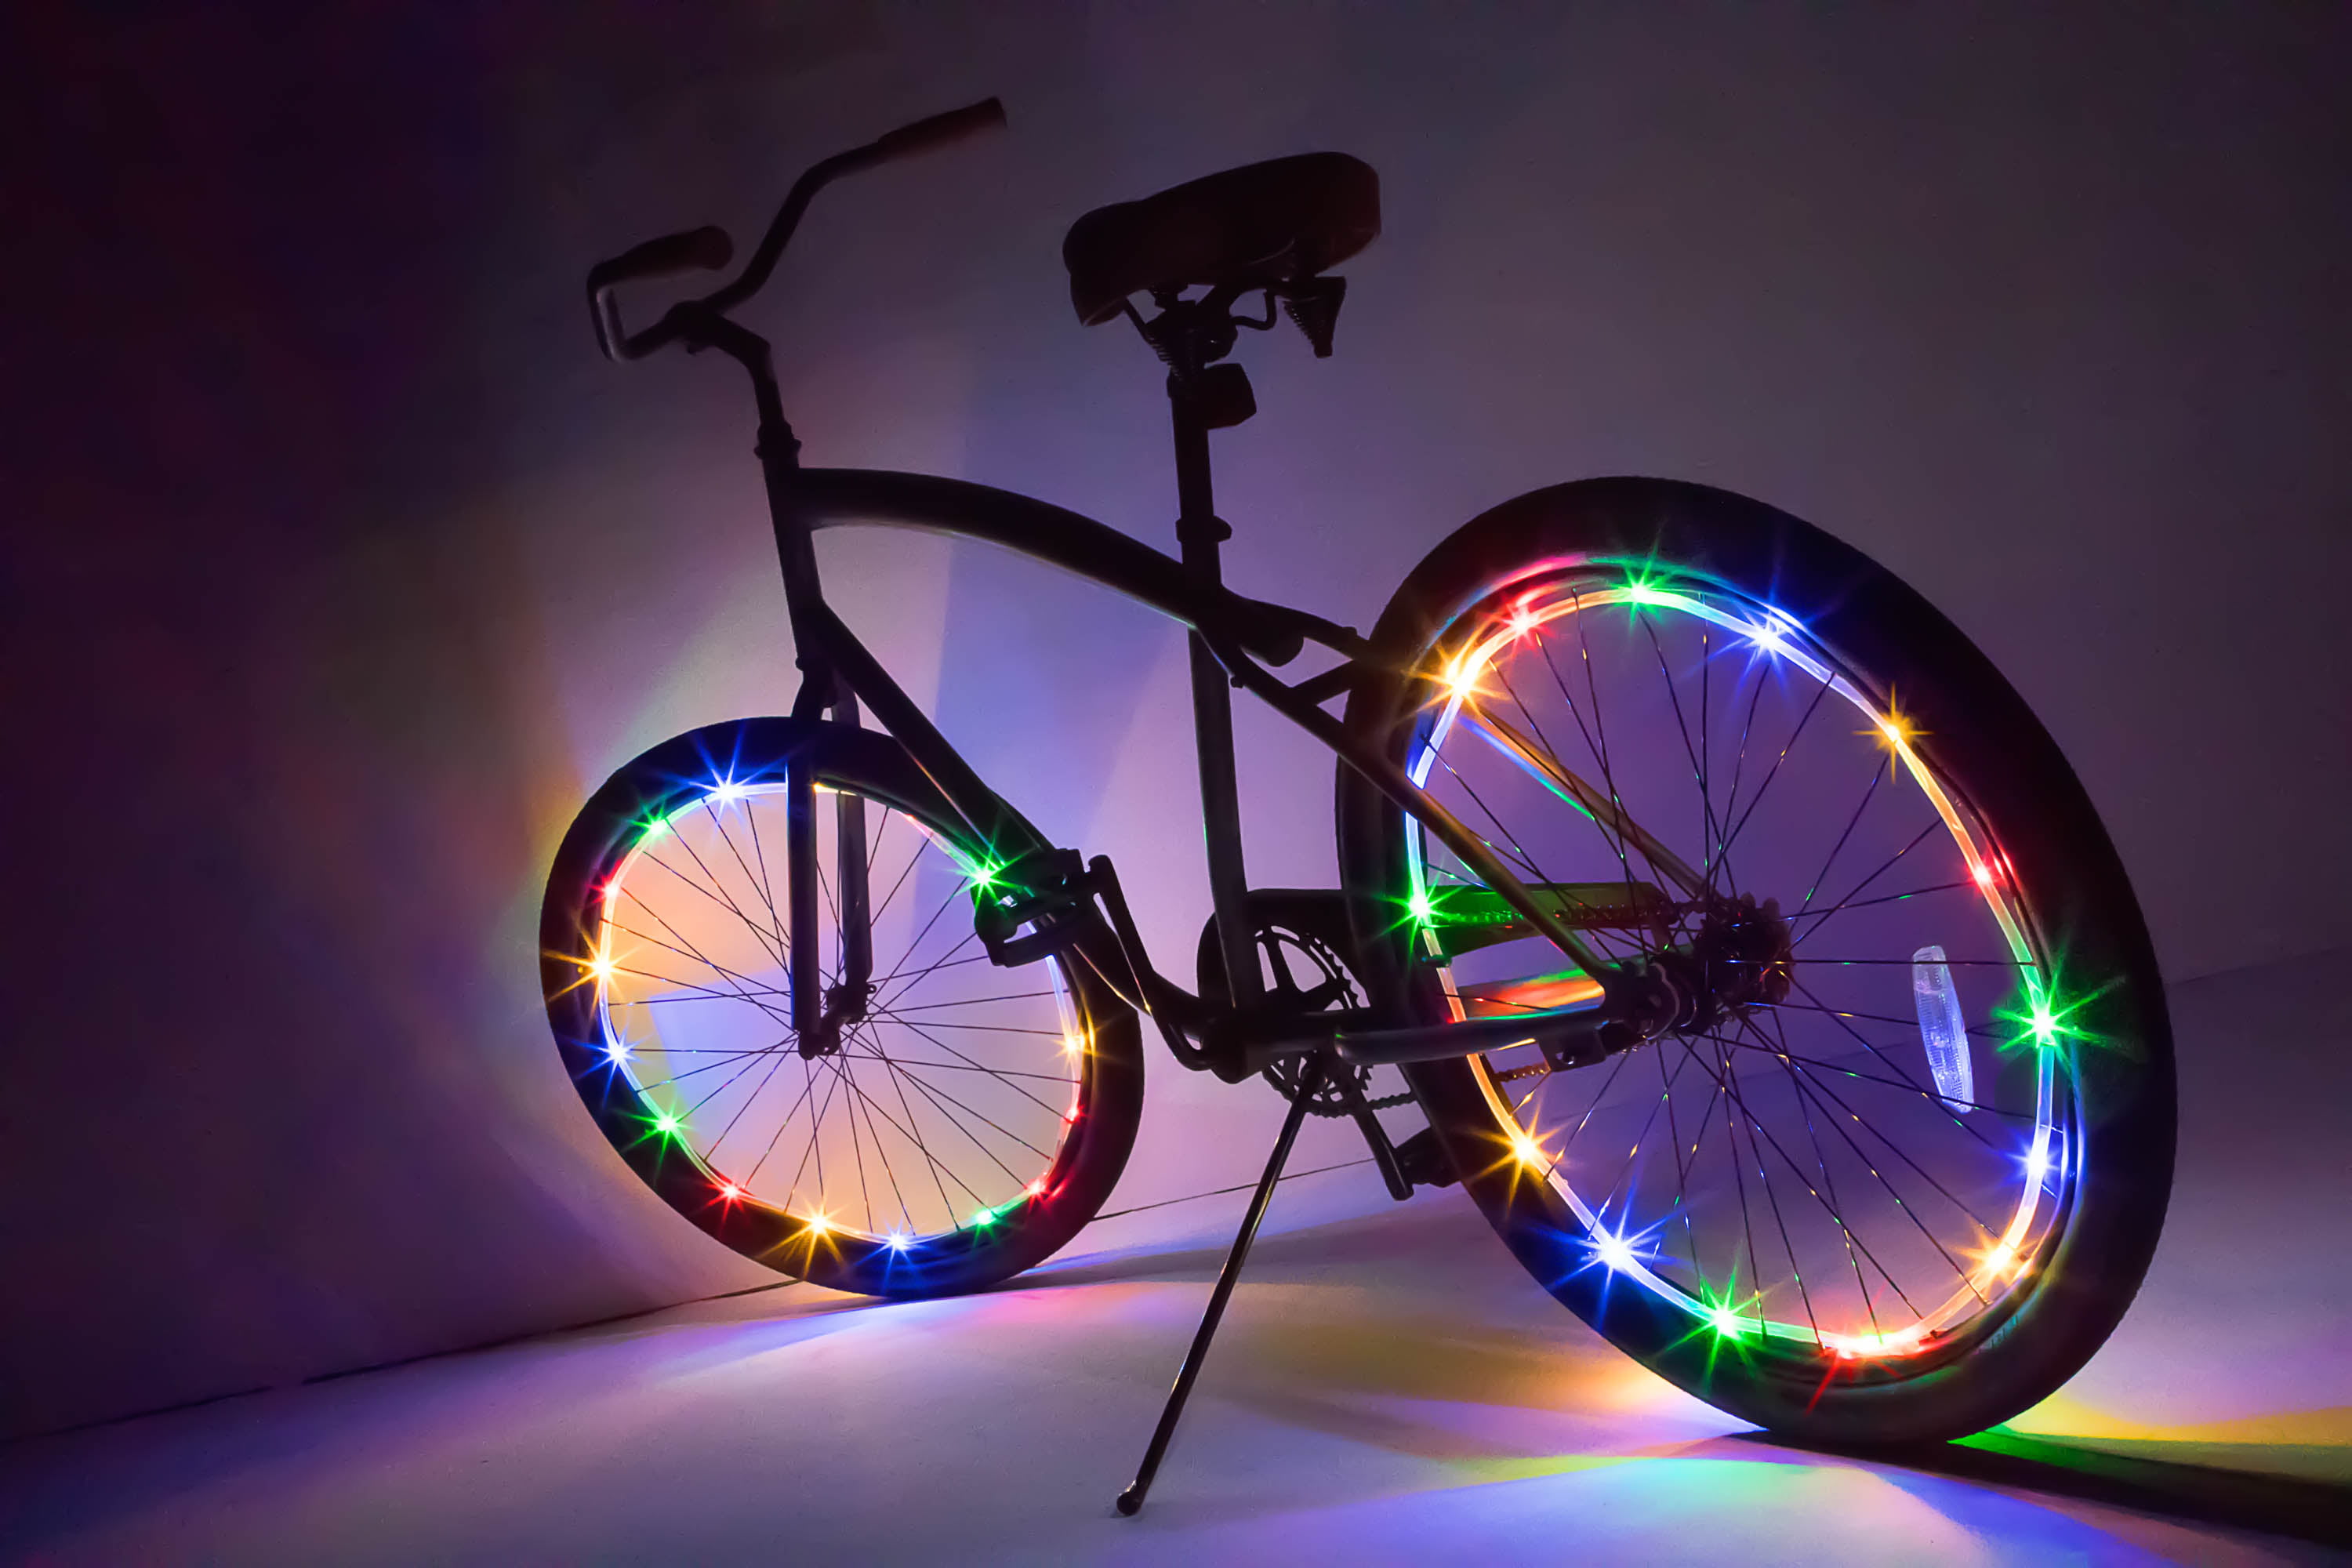 ball bag bike lights